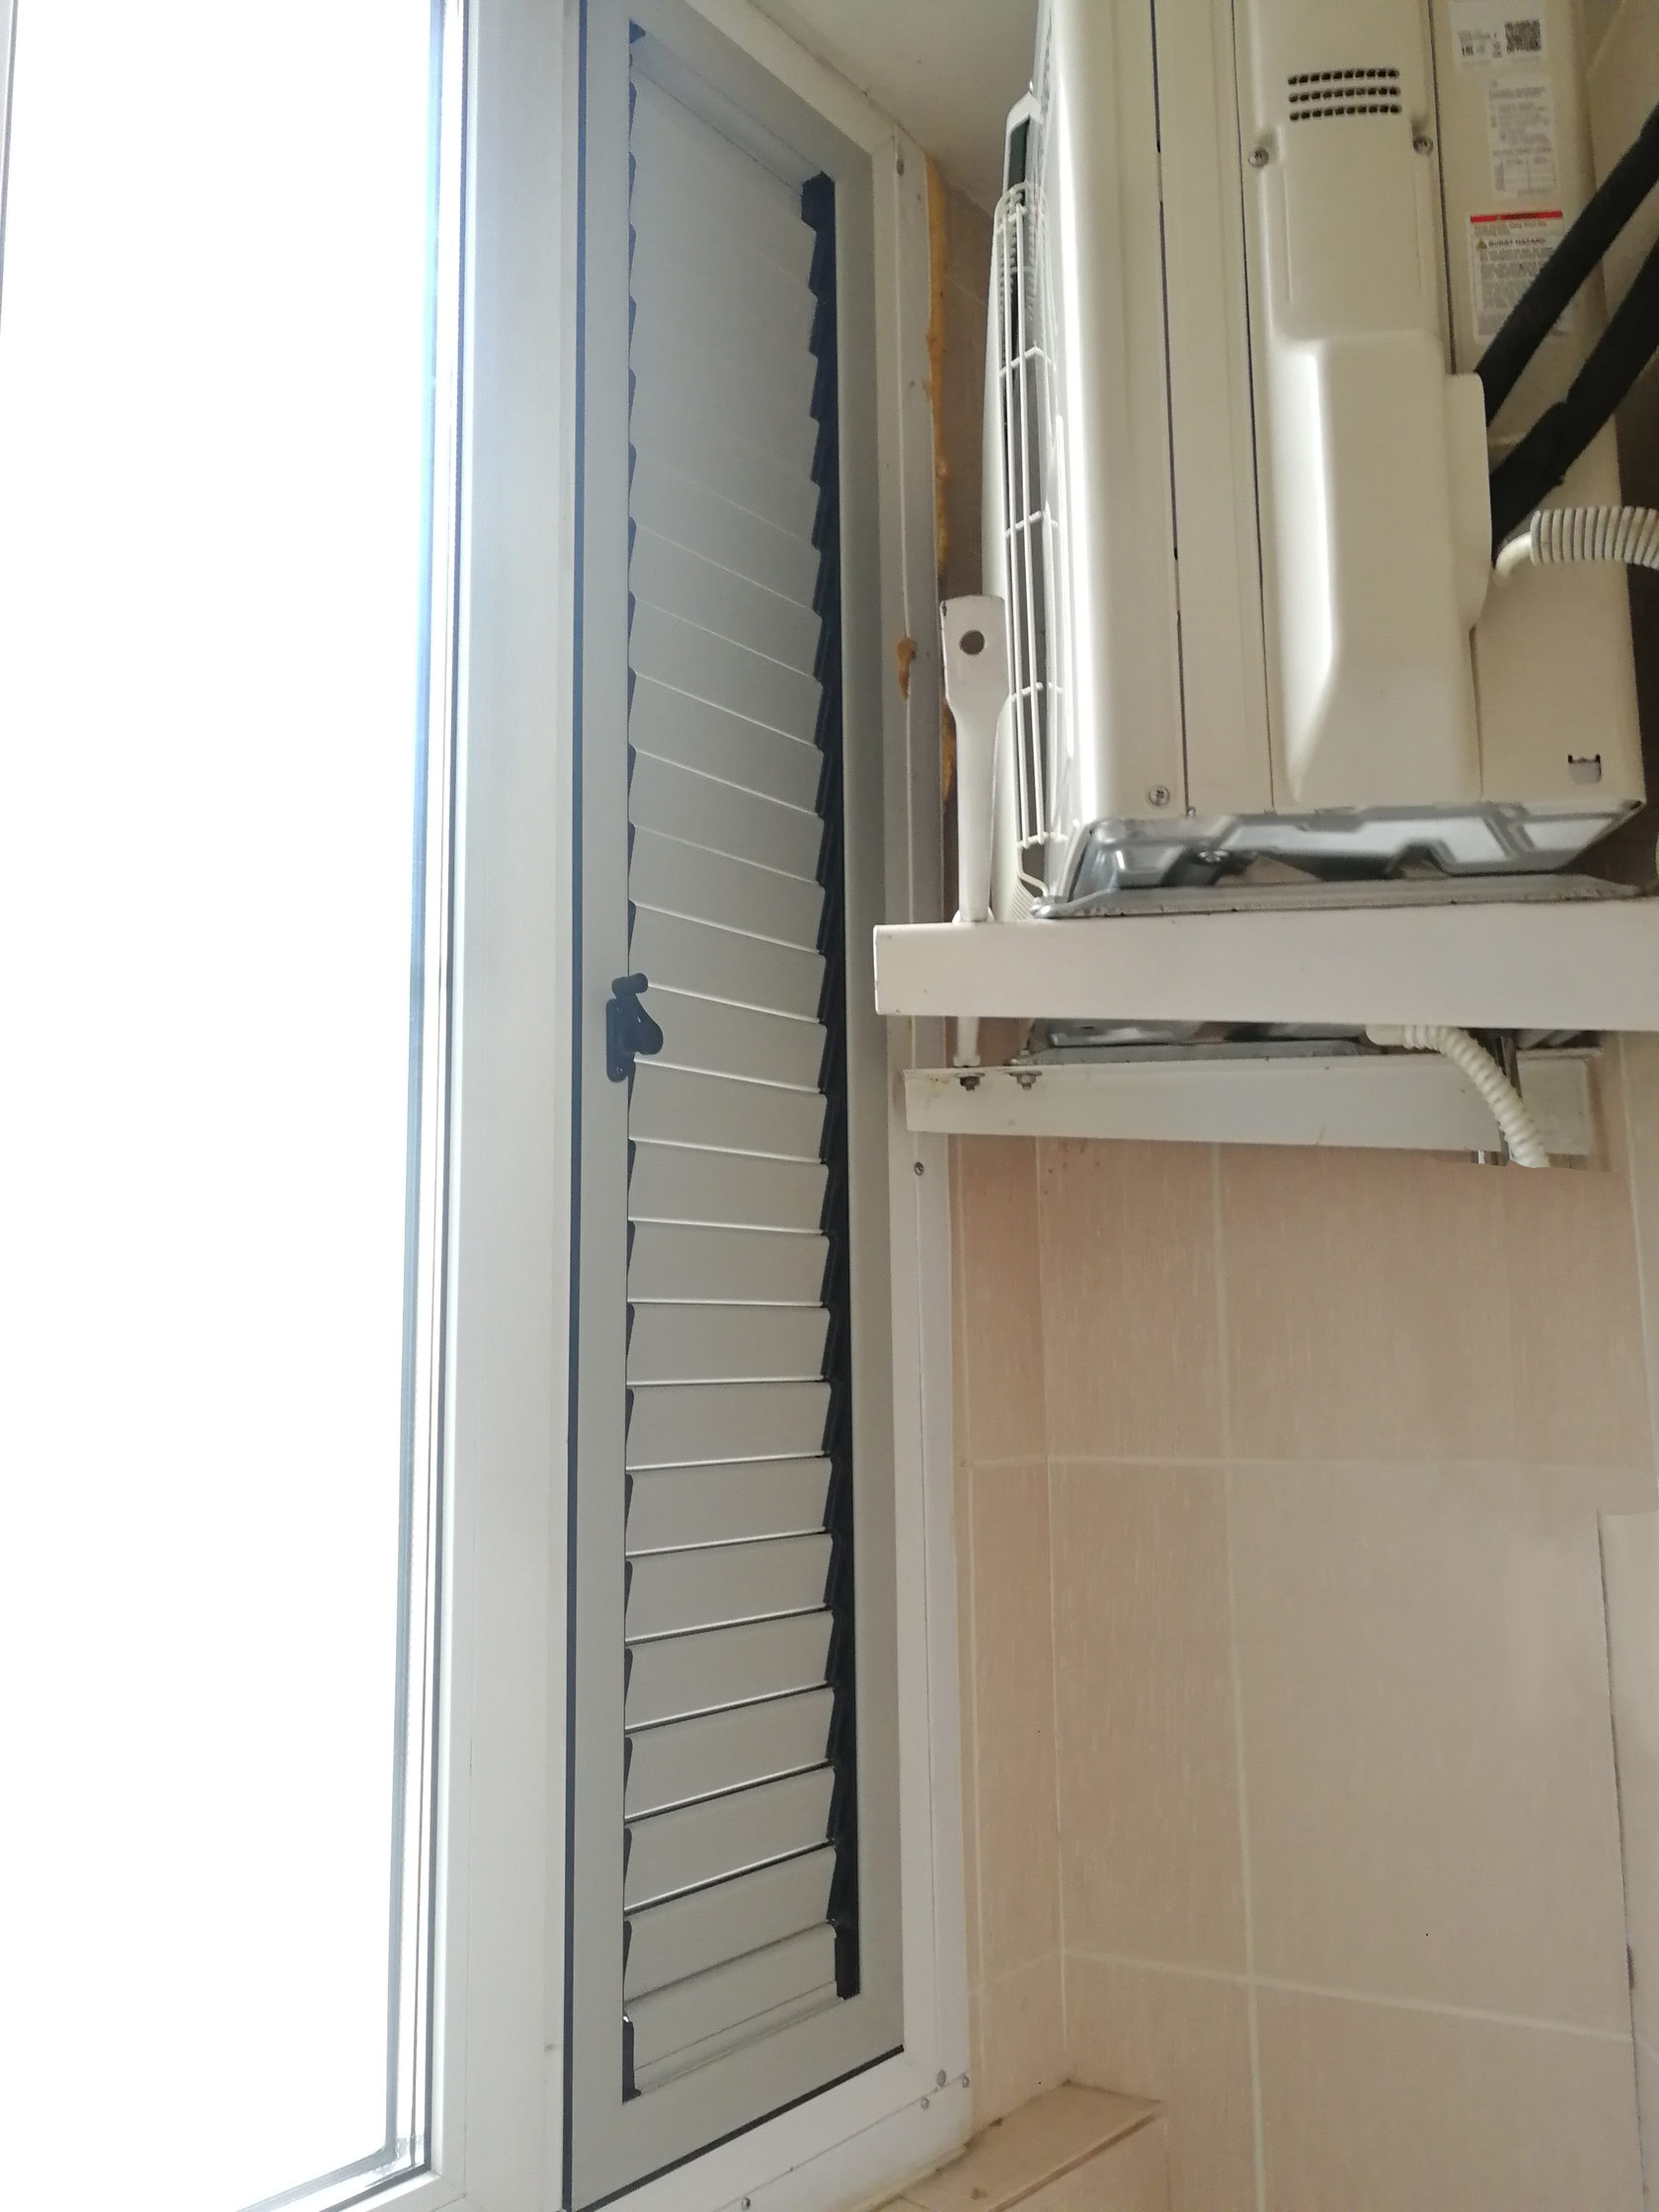 Теперь вентрешетку на балконе можно закрыть. Установка регулируемых вентиляционных решеток вместо статичных от застройщика. 